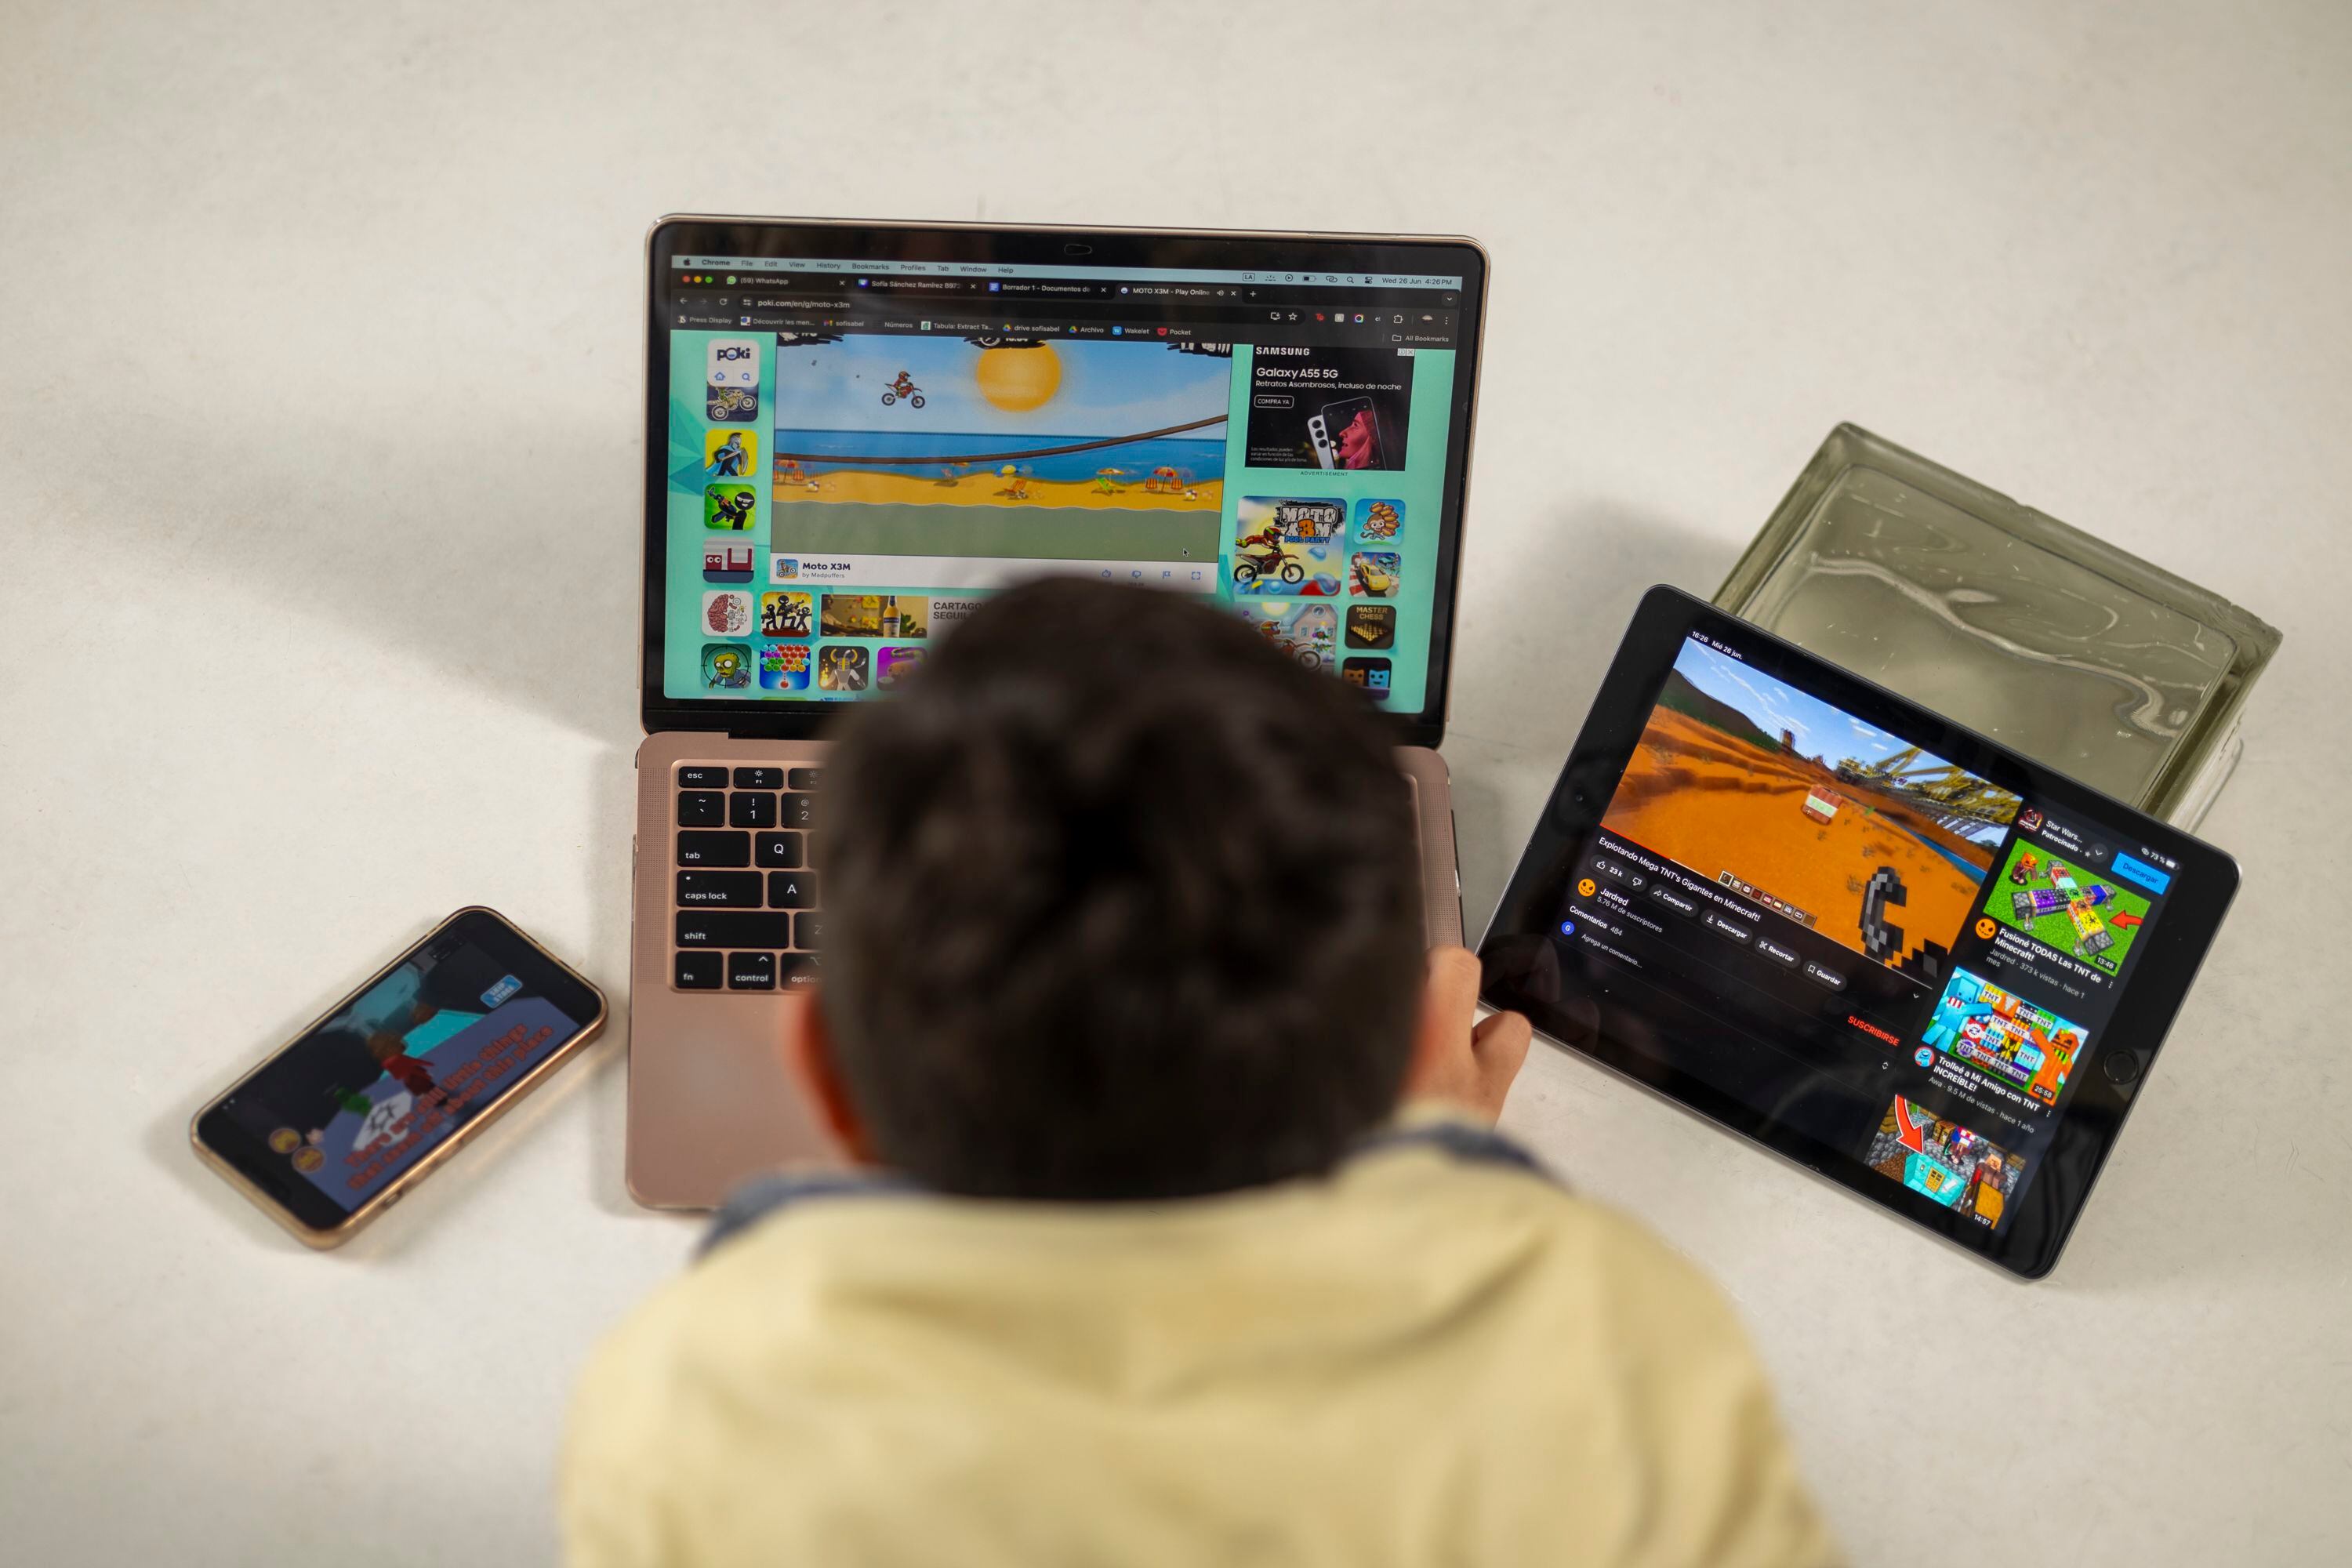 El uso que los niños le dan a las pantallas depende de su personalidad. Algunos utilizan los teléfonos para videojuegos, mientras que otros lo hacen para conectarse en línea con sus amigos.